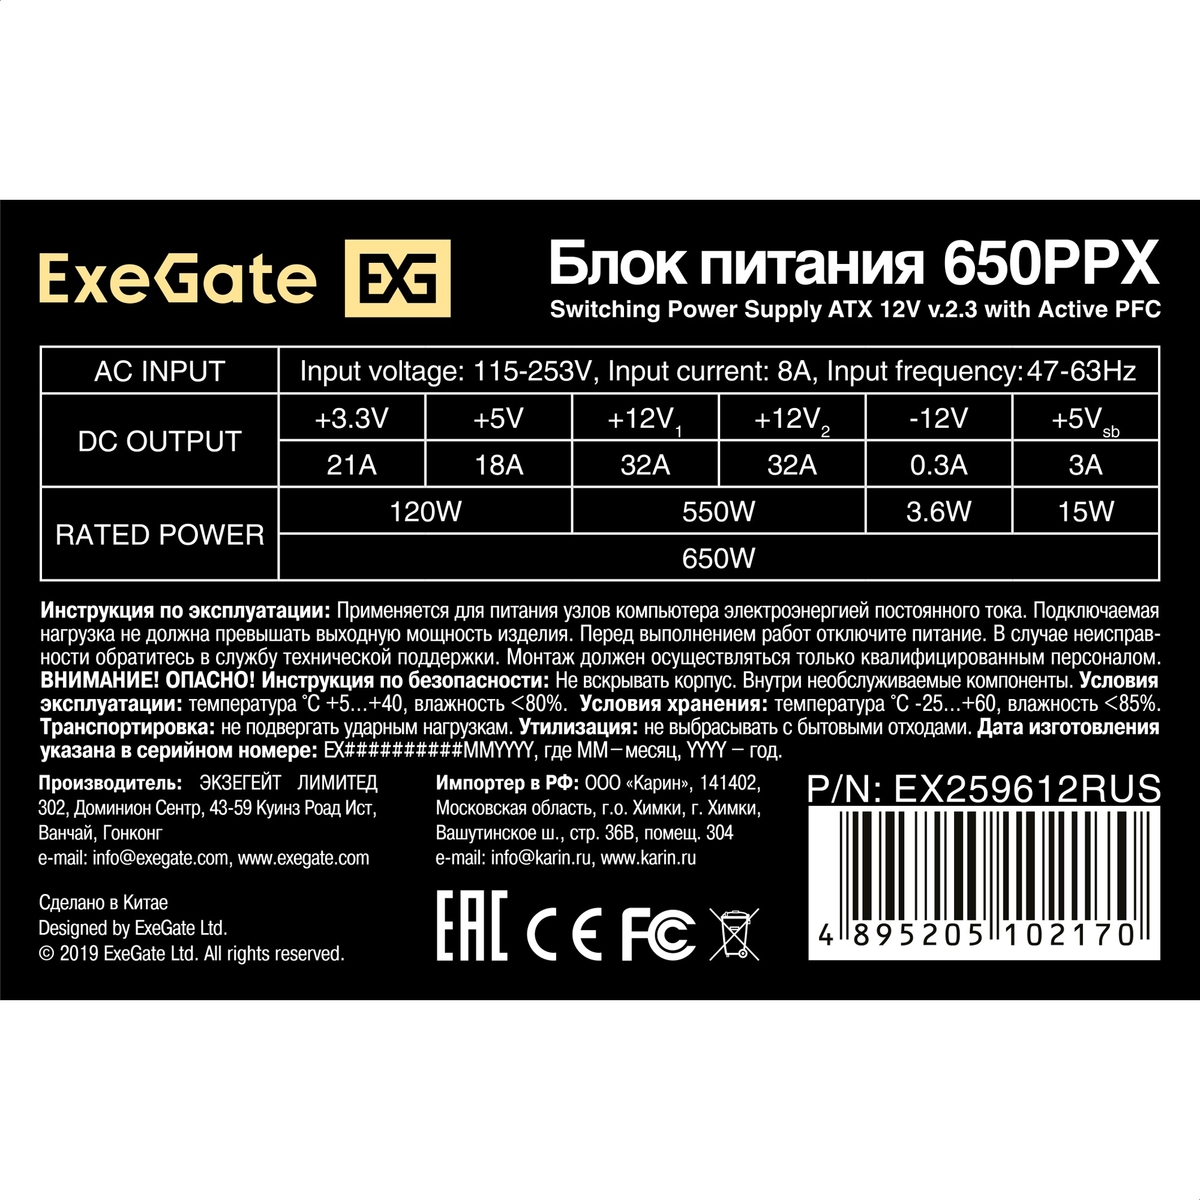 PSU 650W ExeGate 650PPX